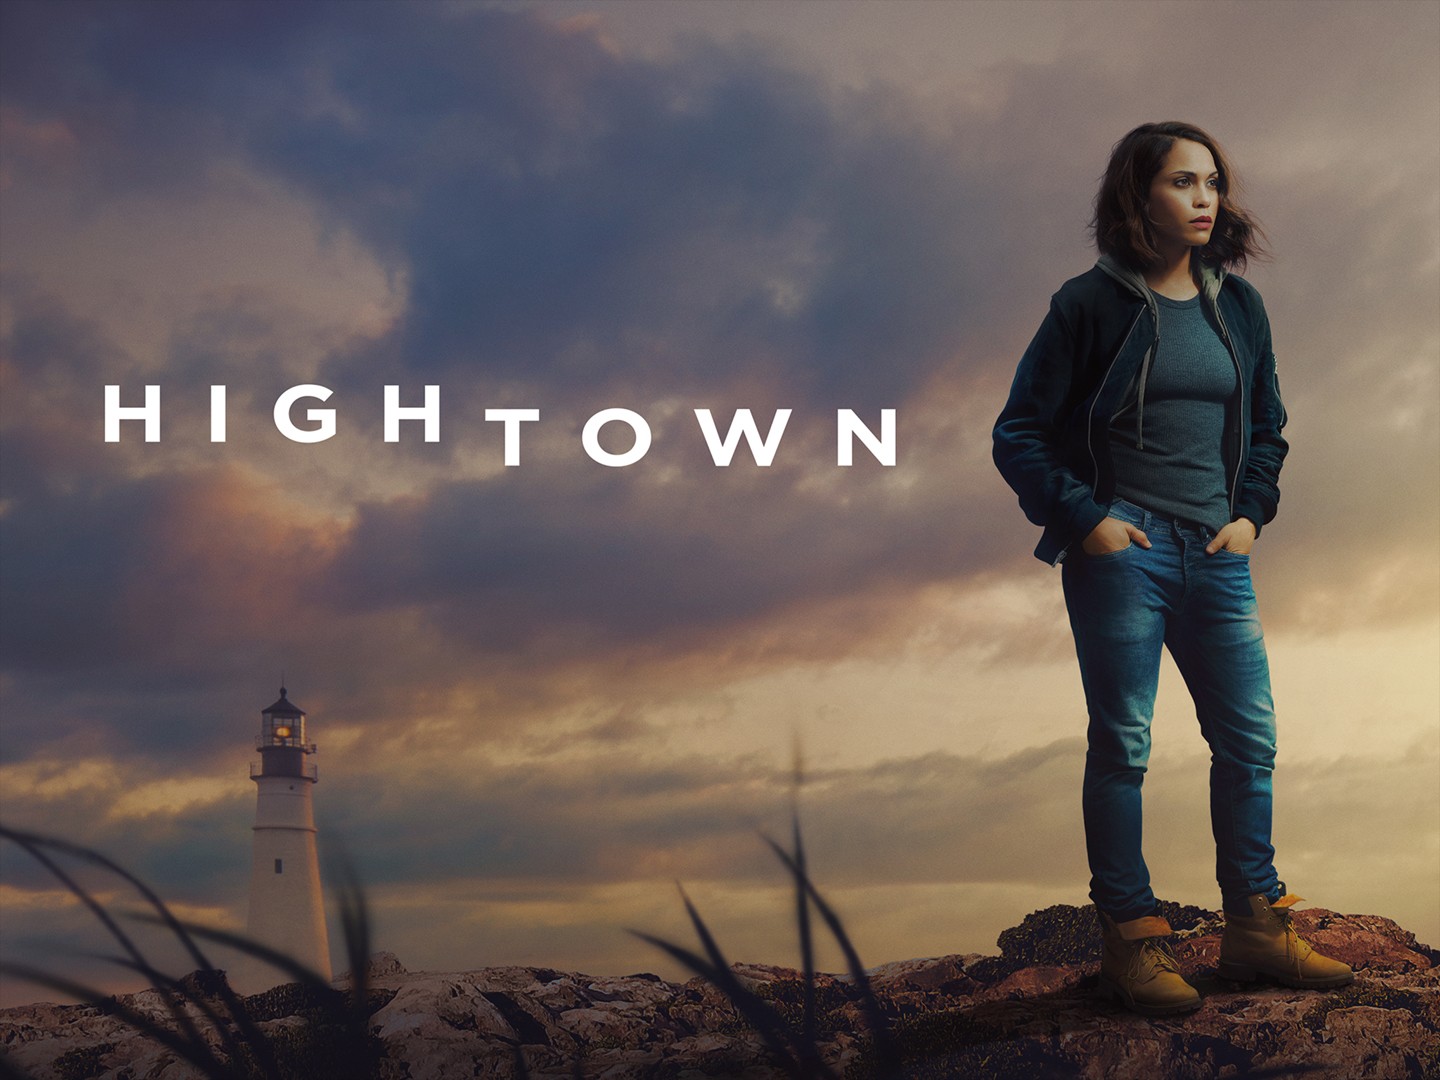 Hightown Season 3